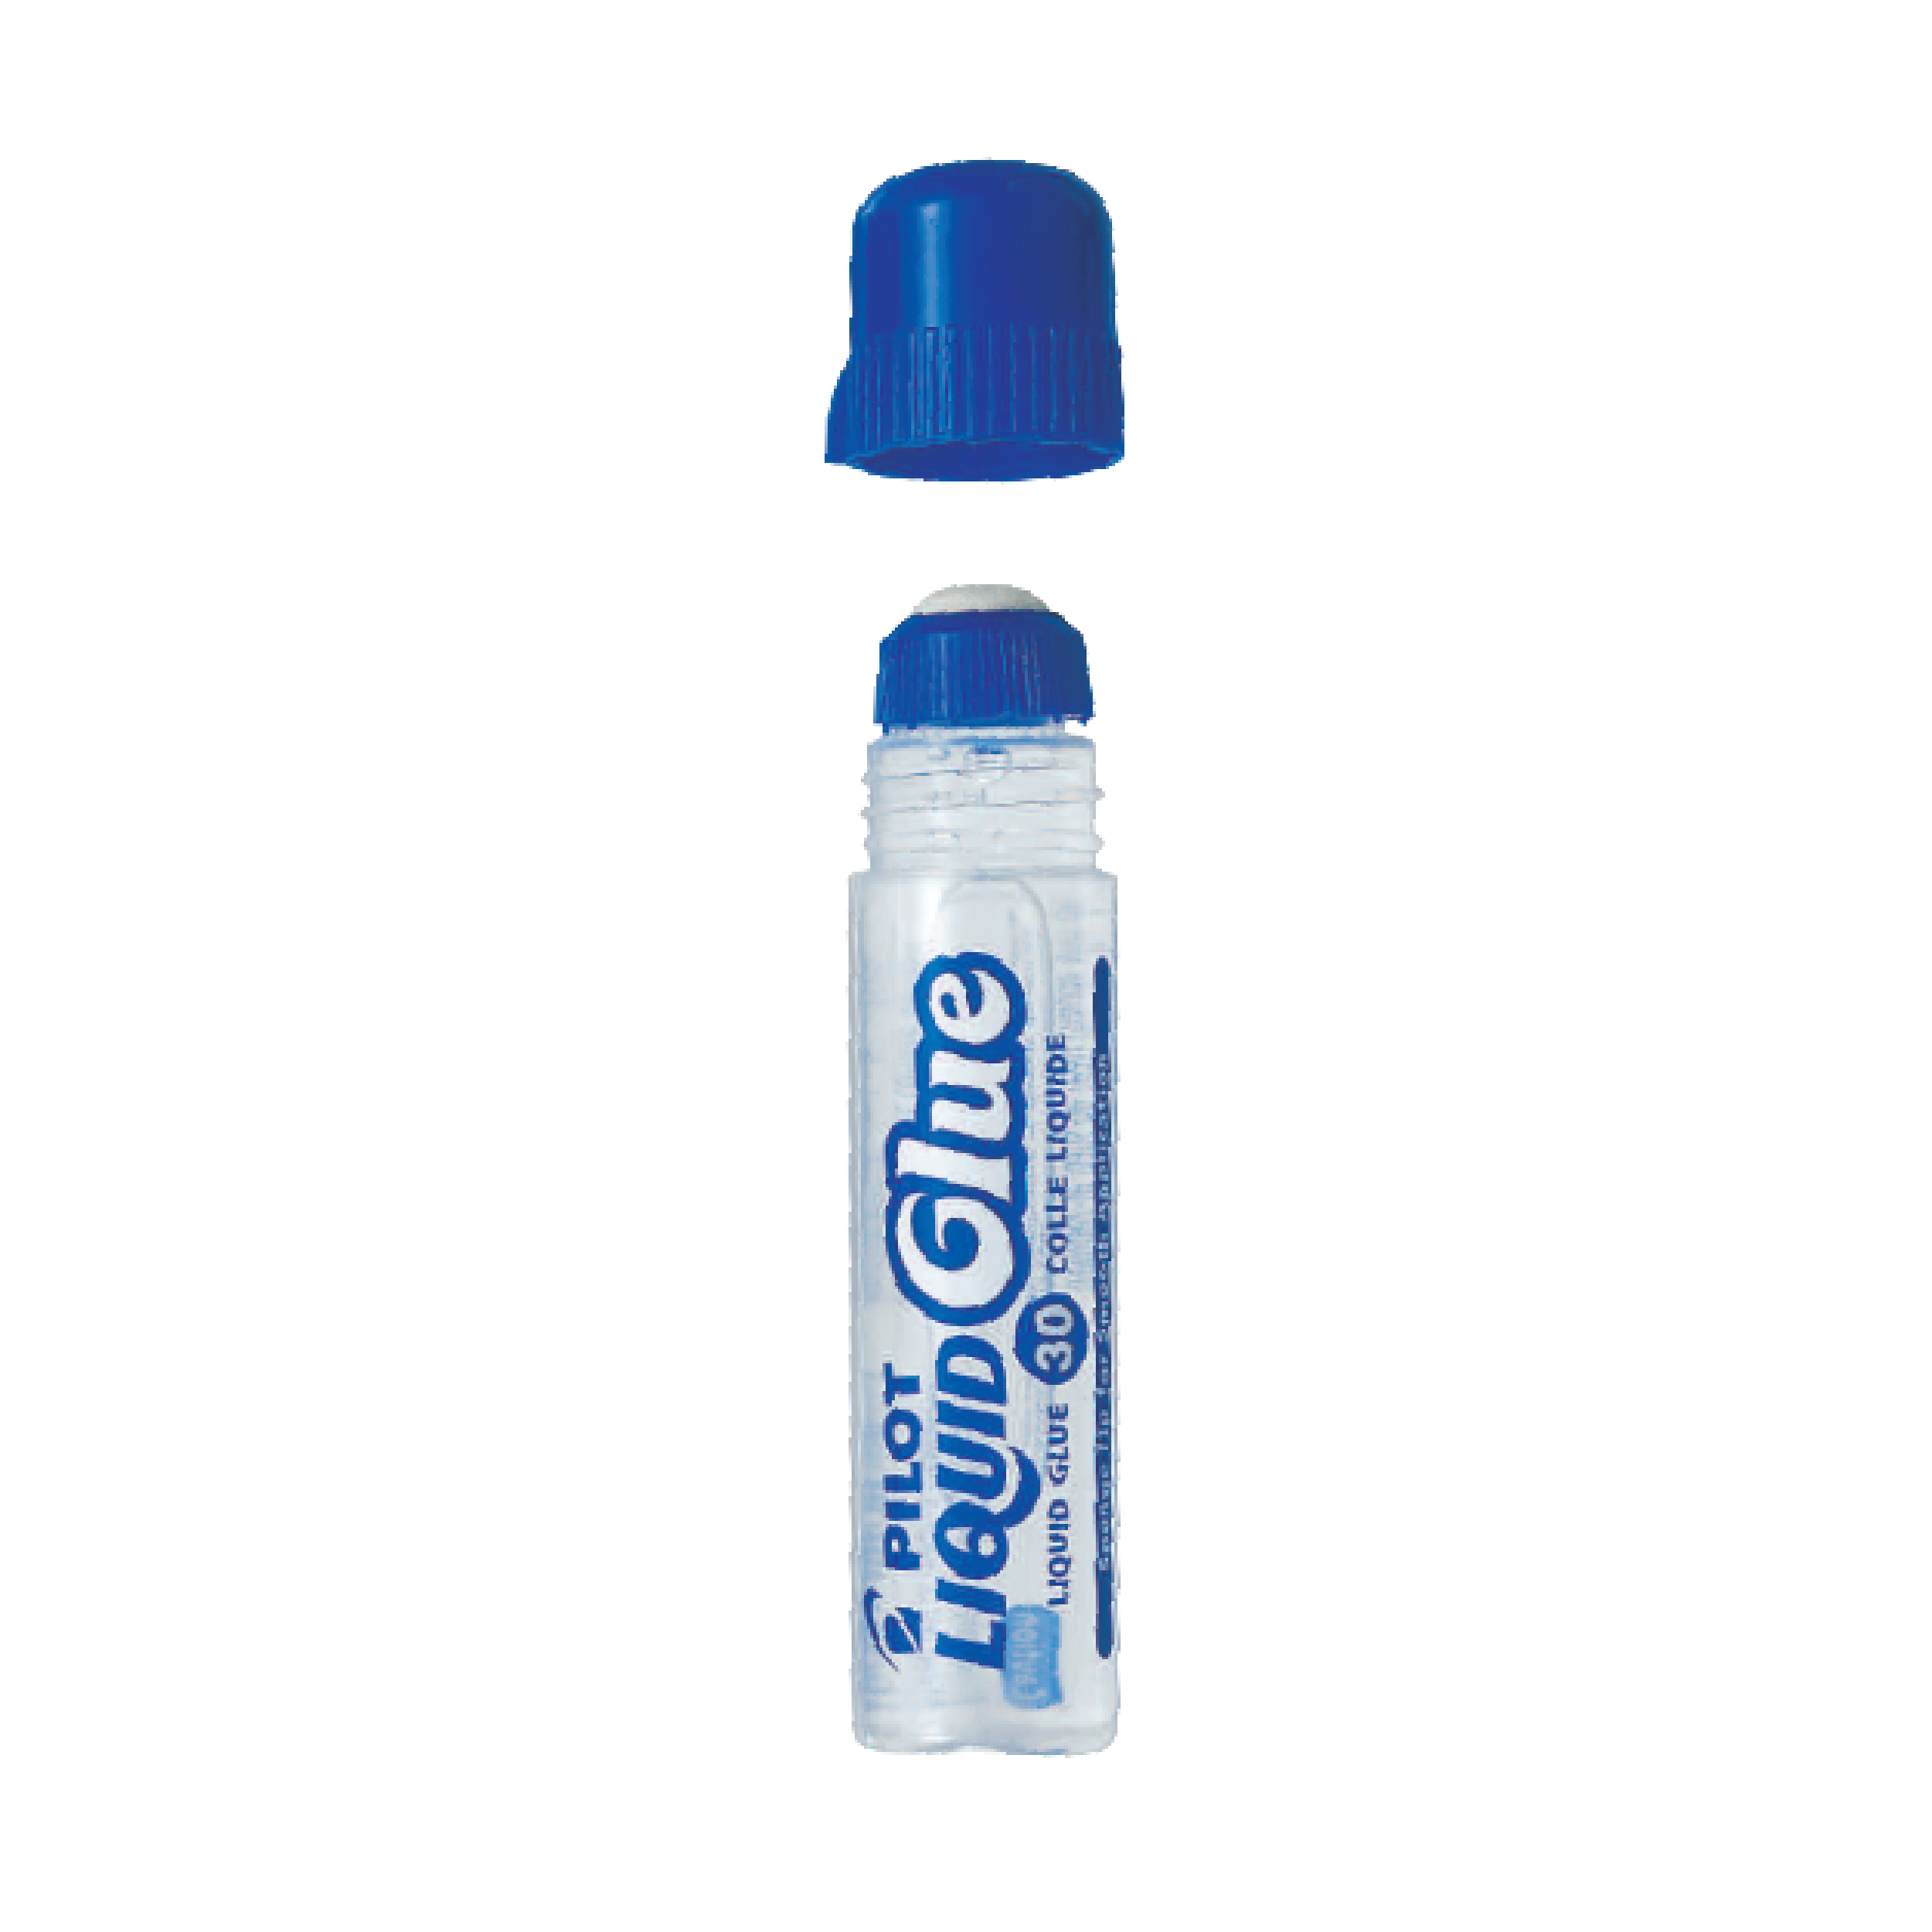 Pilot Liquid Glue, 30ml (EGLN-30)